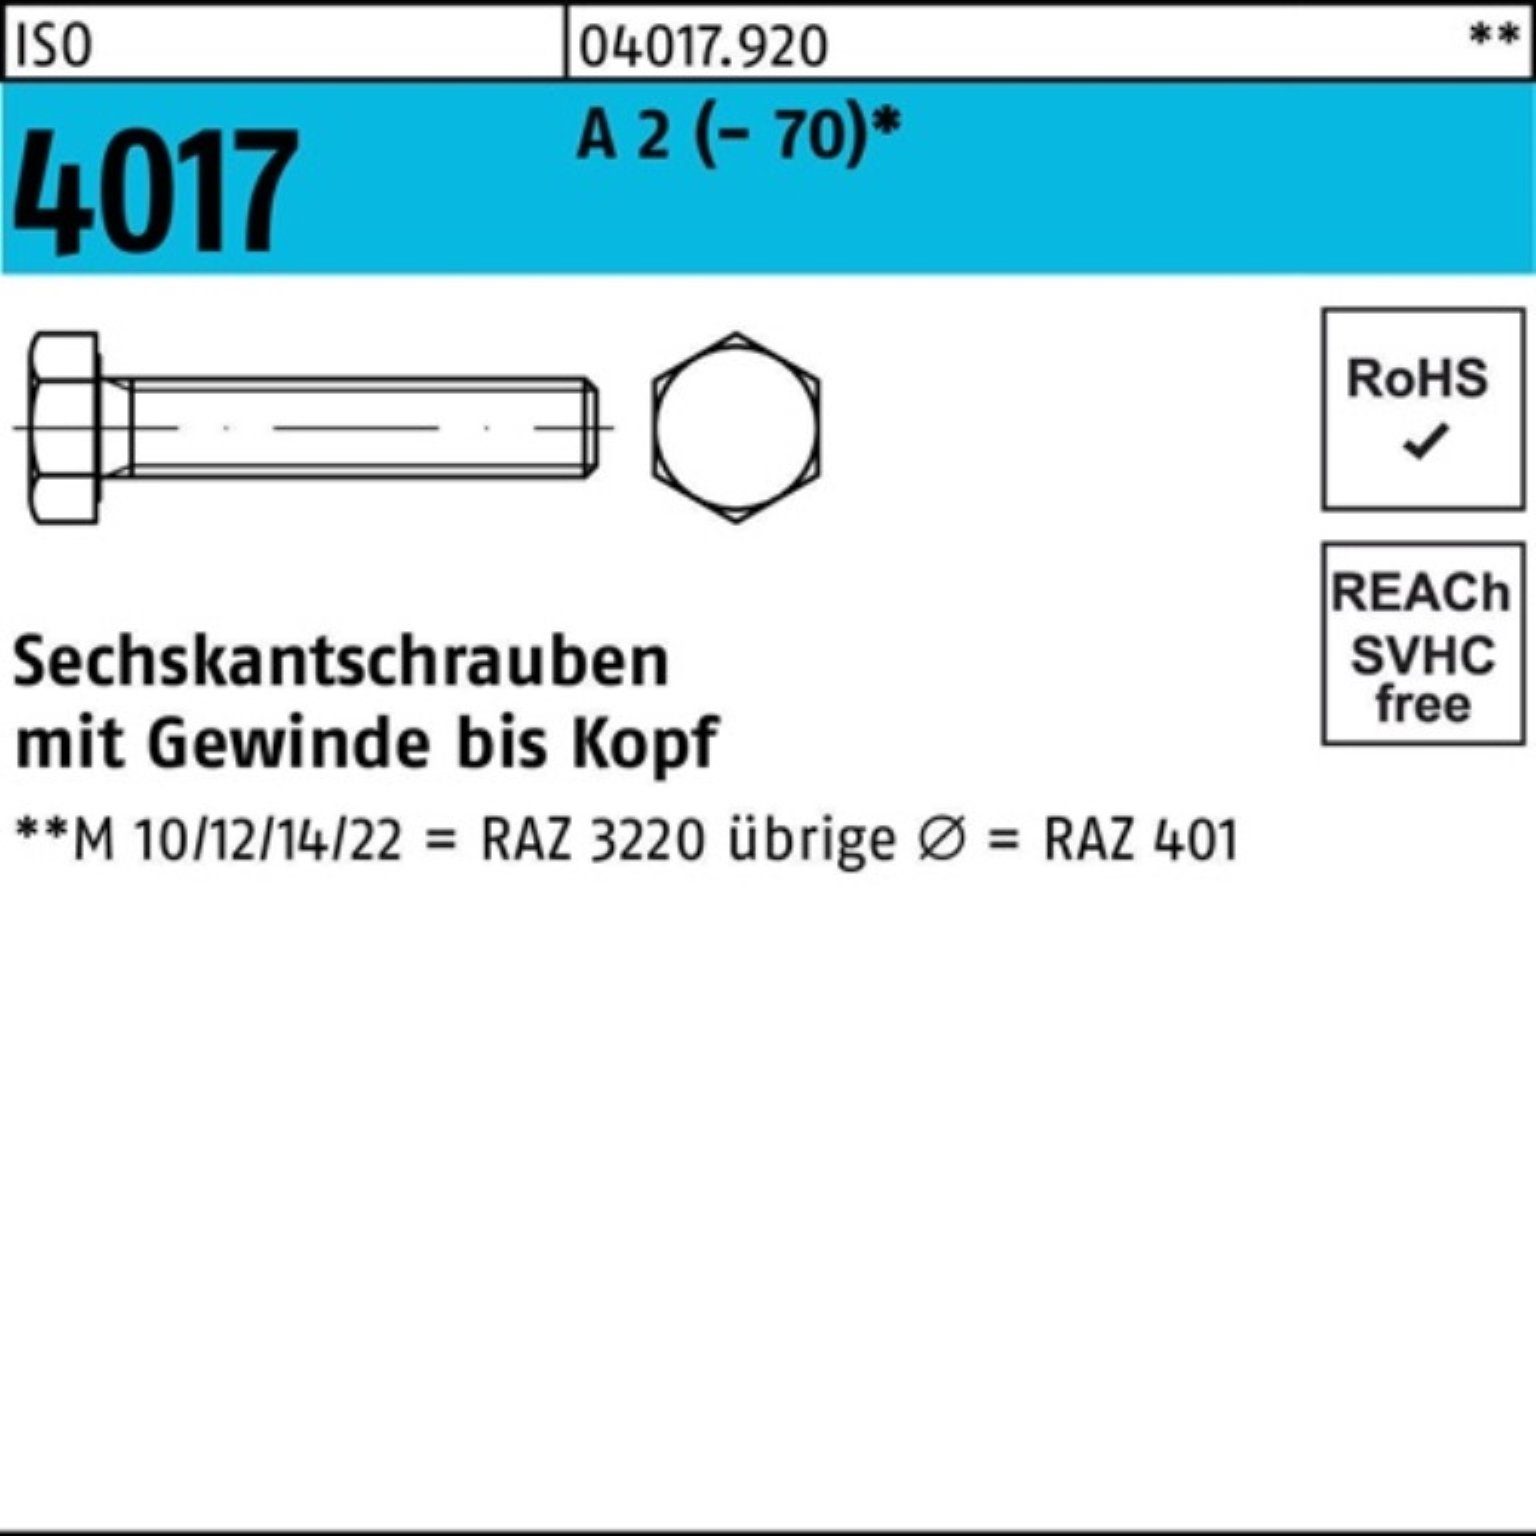 (70) 100er VG ISO Sechskantschraube Pack 2 Bufab M16x Sechskantschraube Stück A 25 50 4017